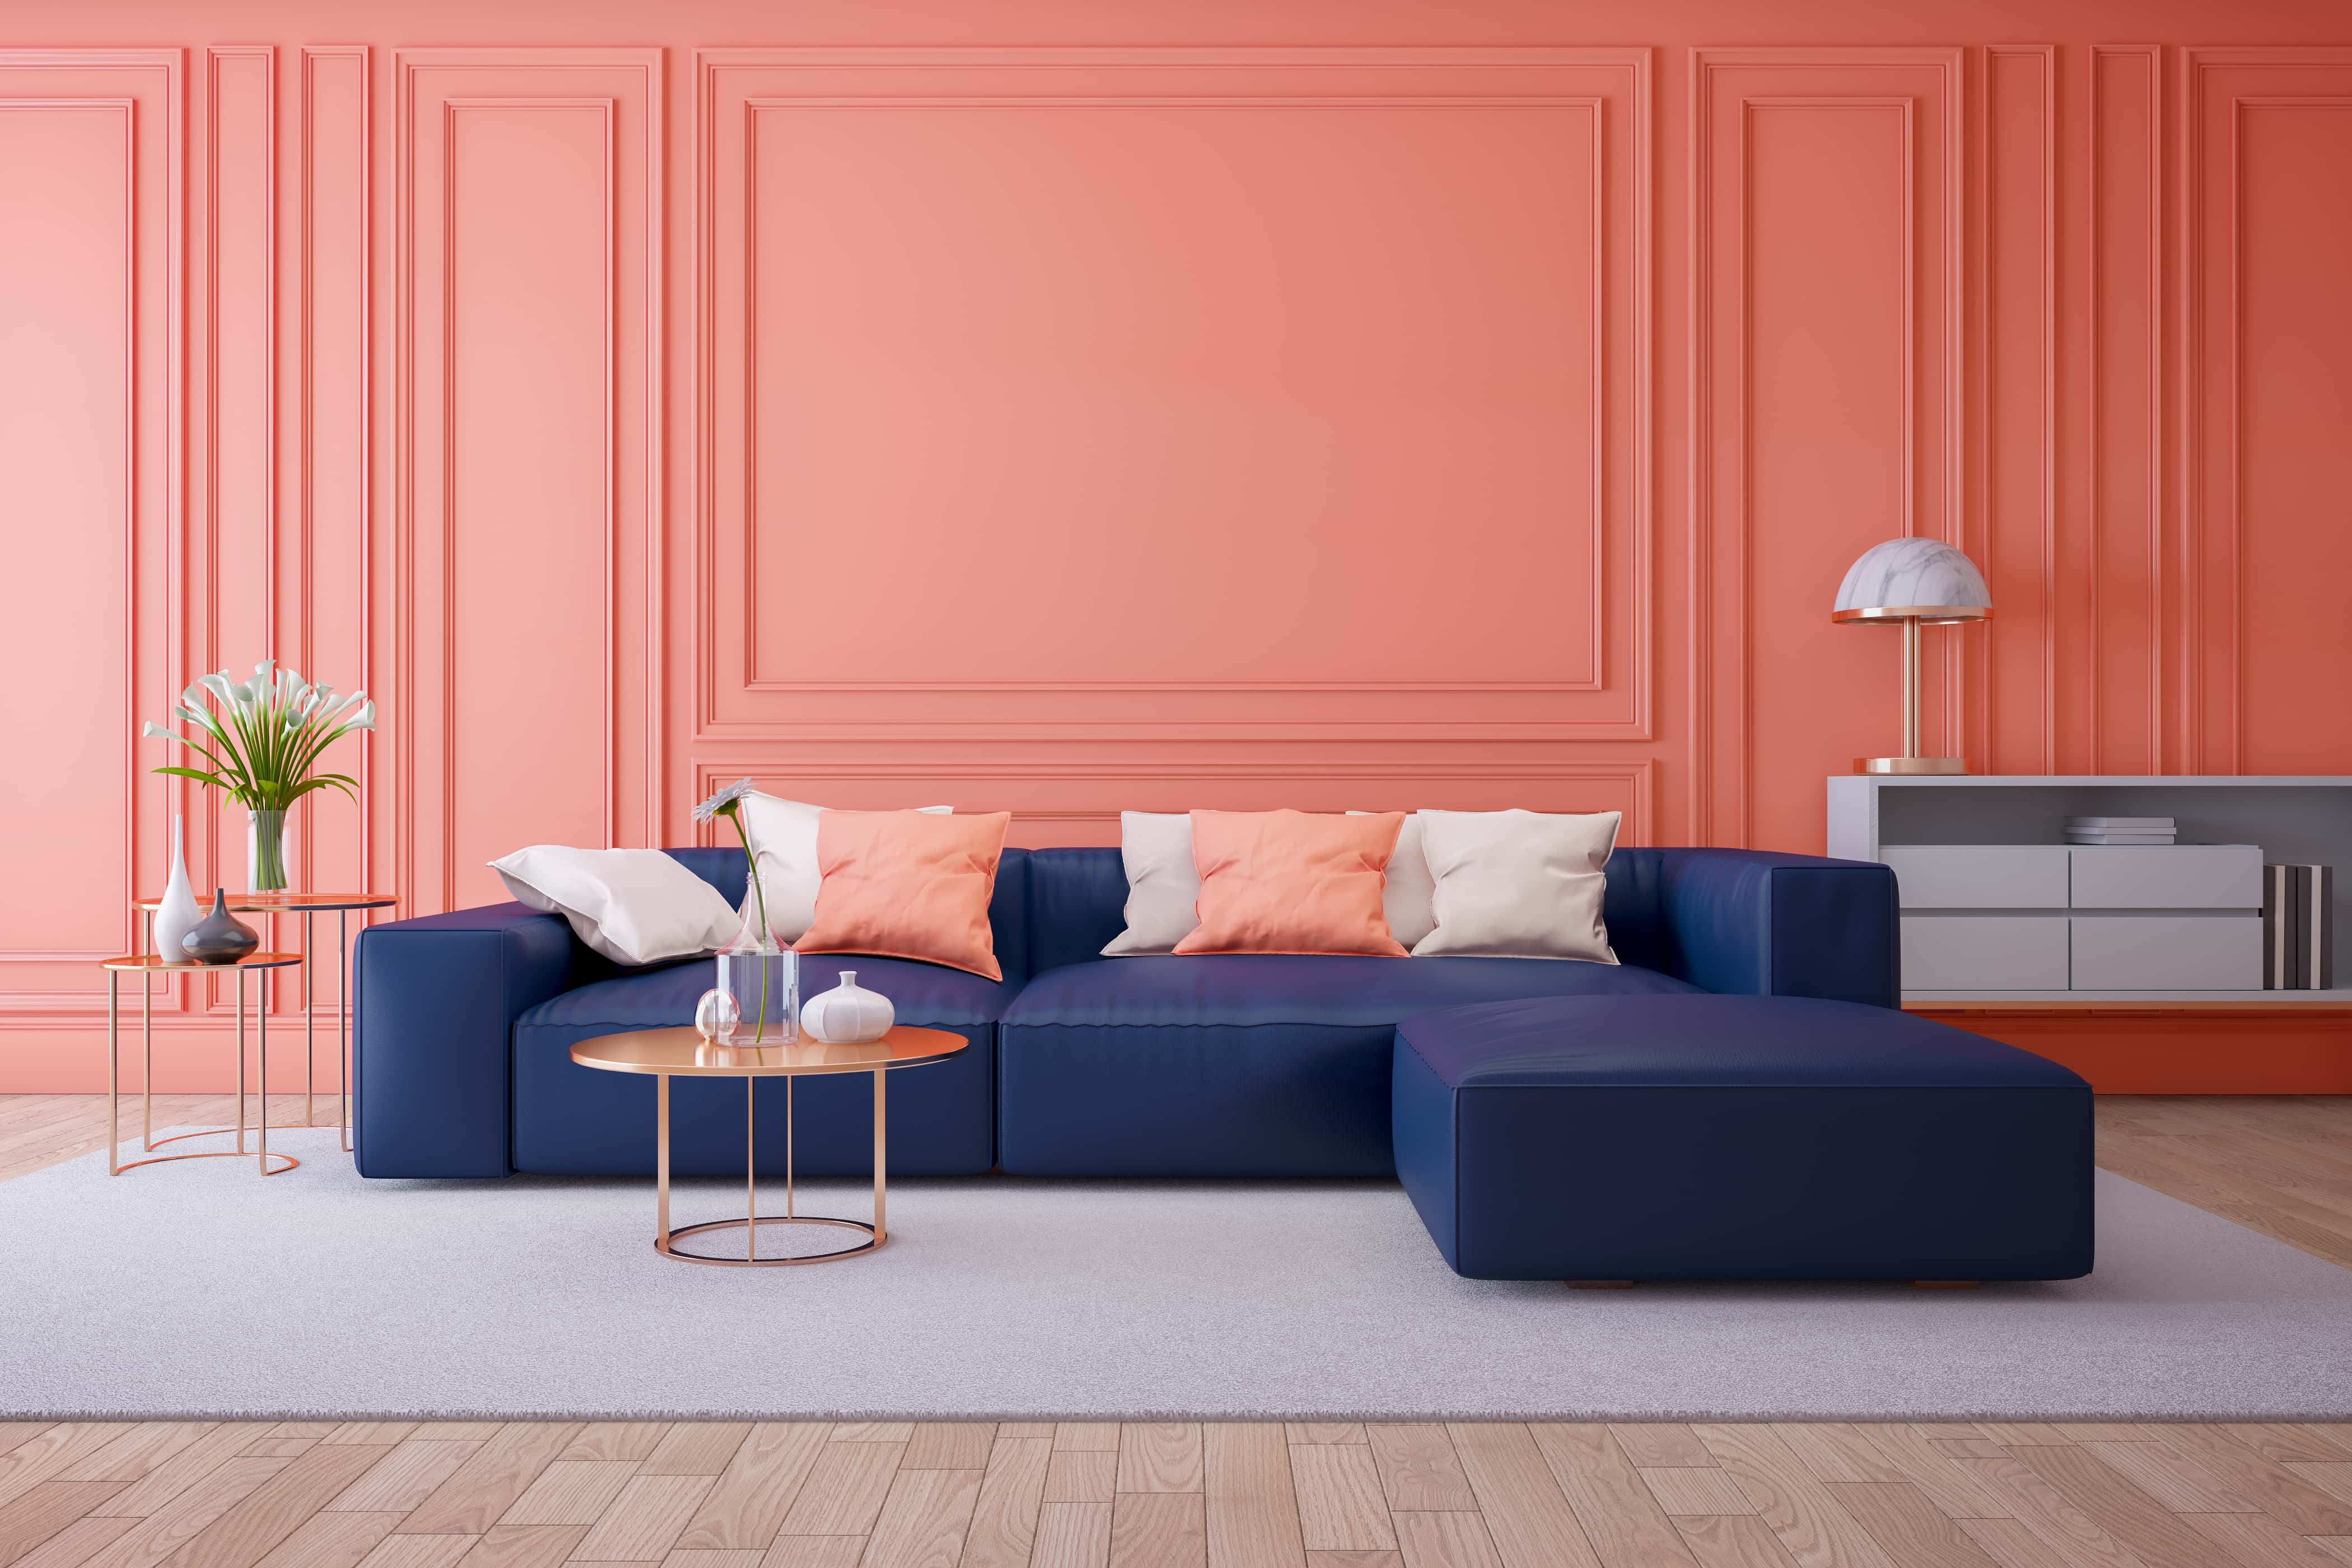 5 Contemporary Colour Schemes For Your Living Room Homelane Blog